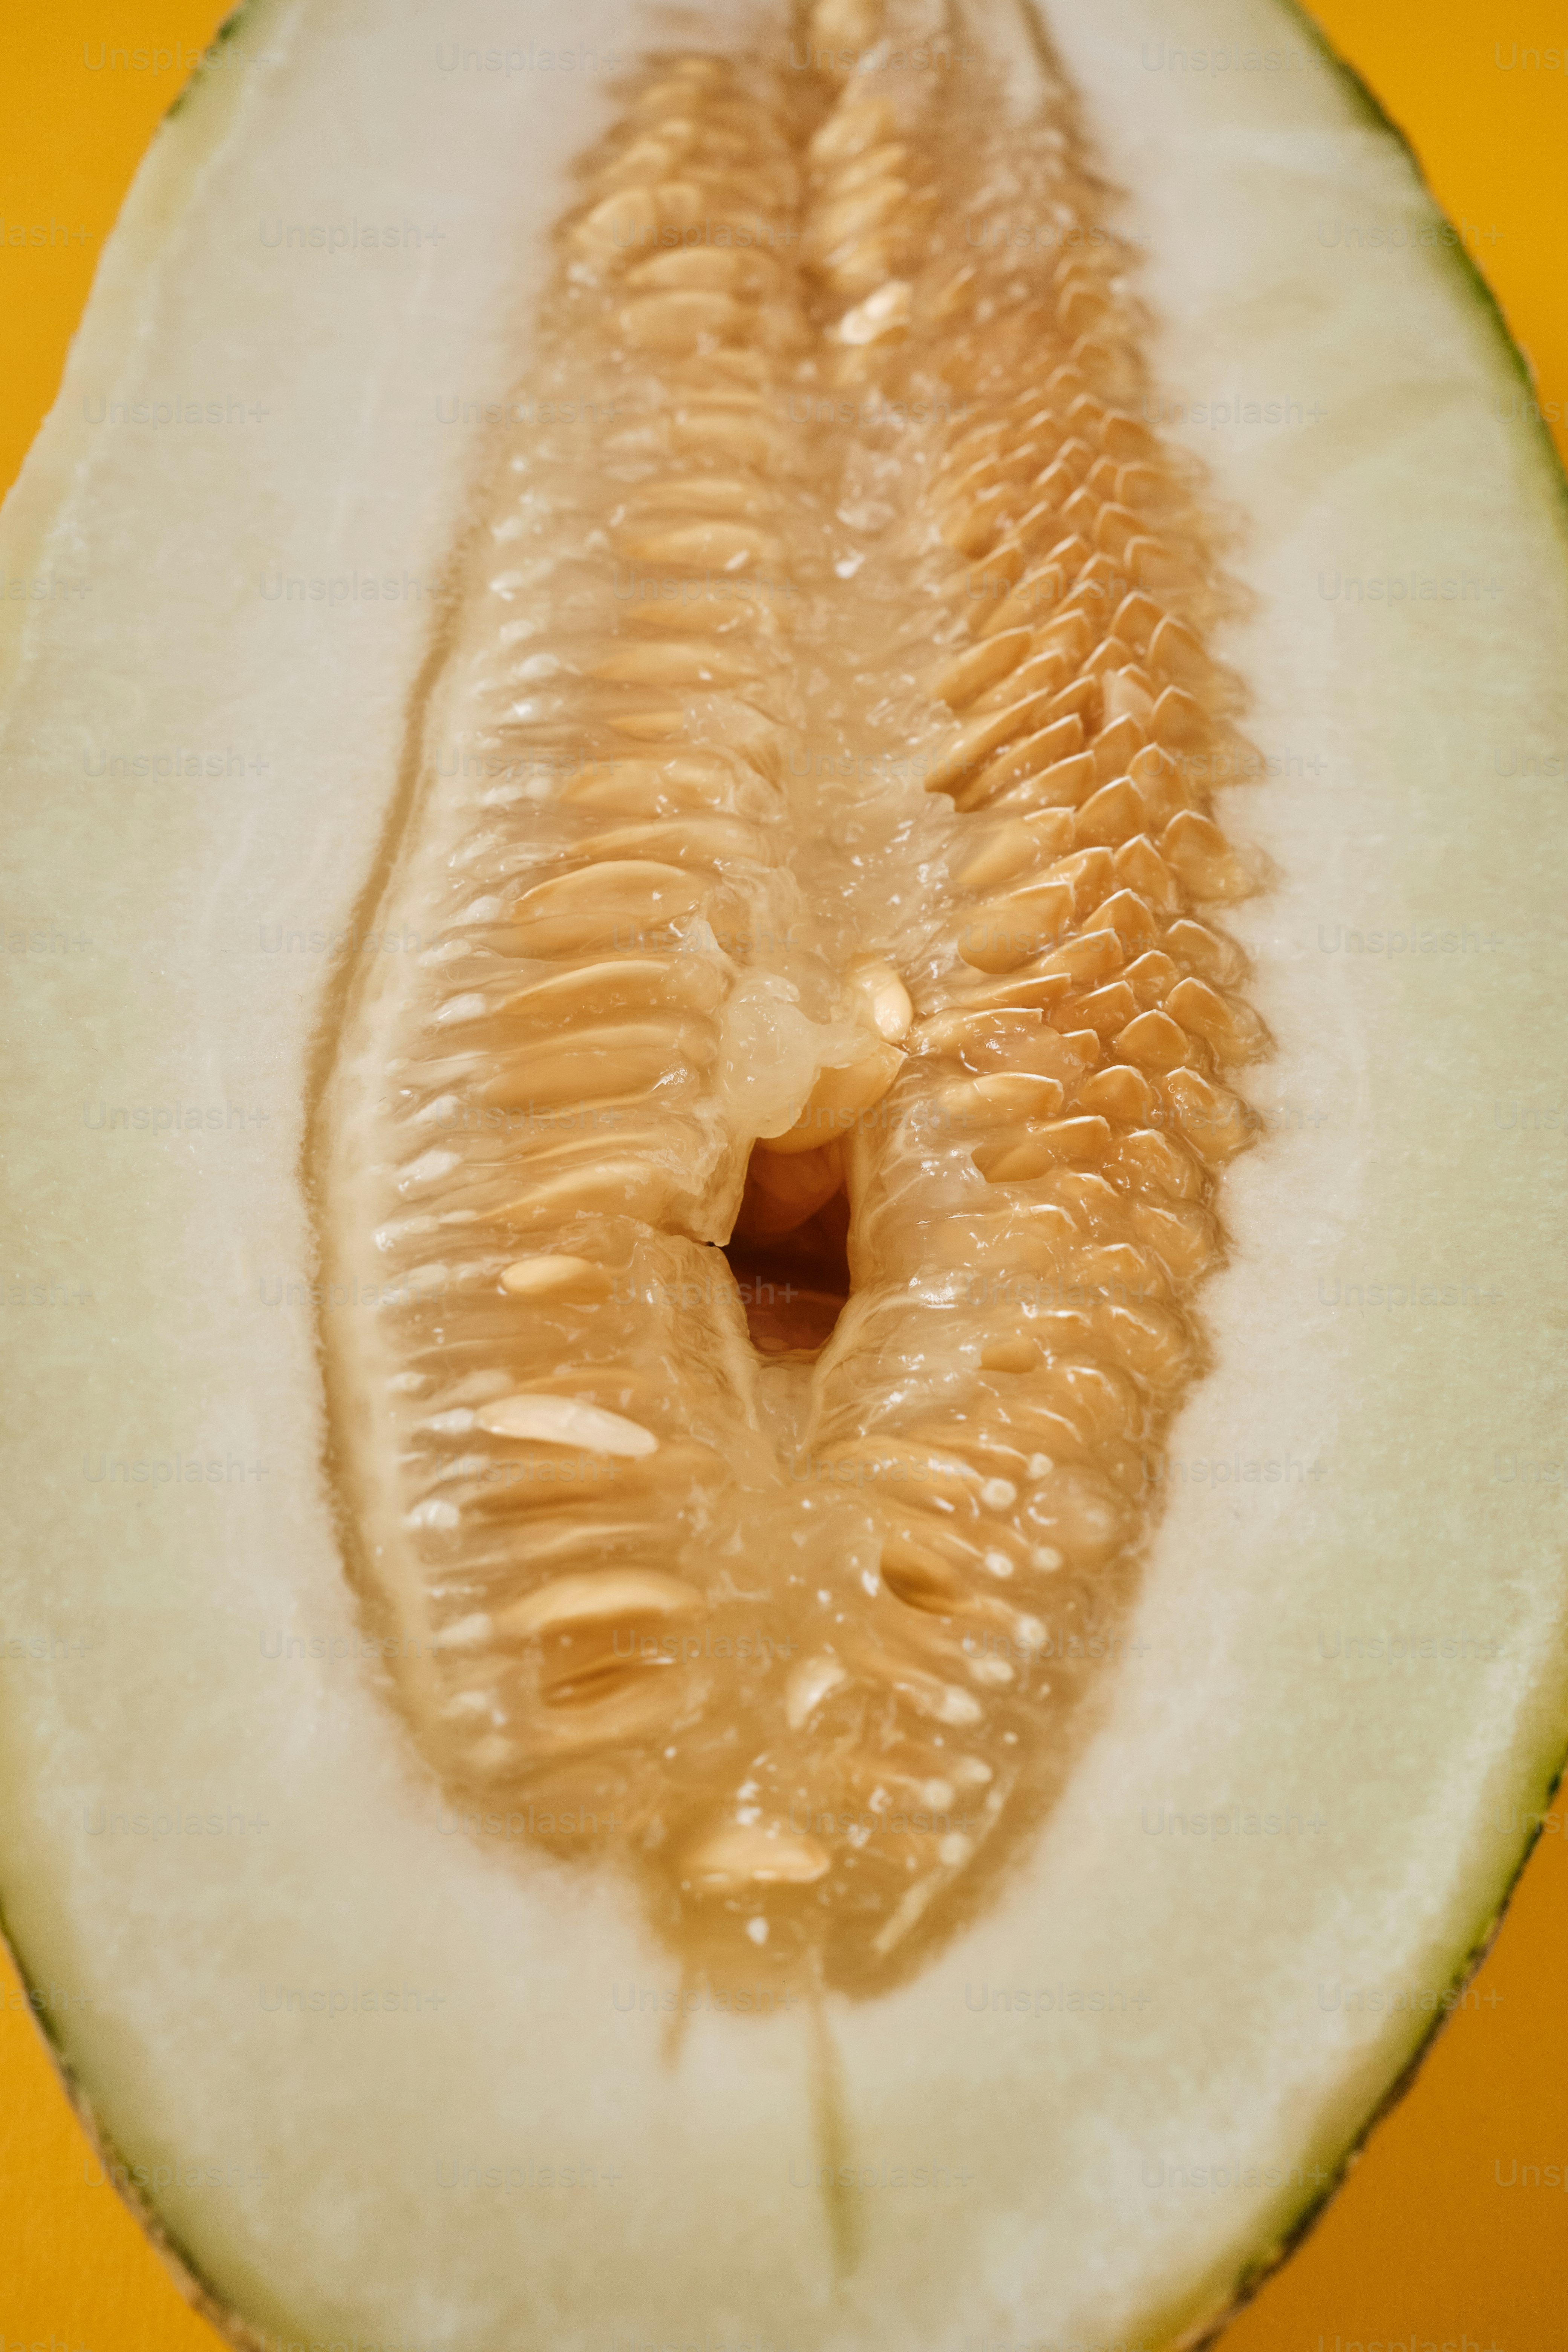 vulva-like melon